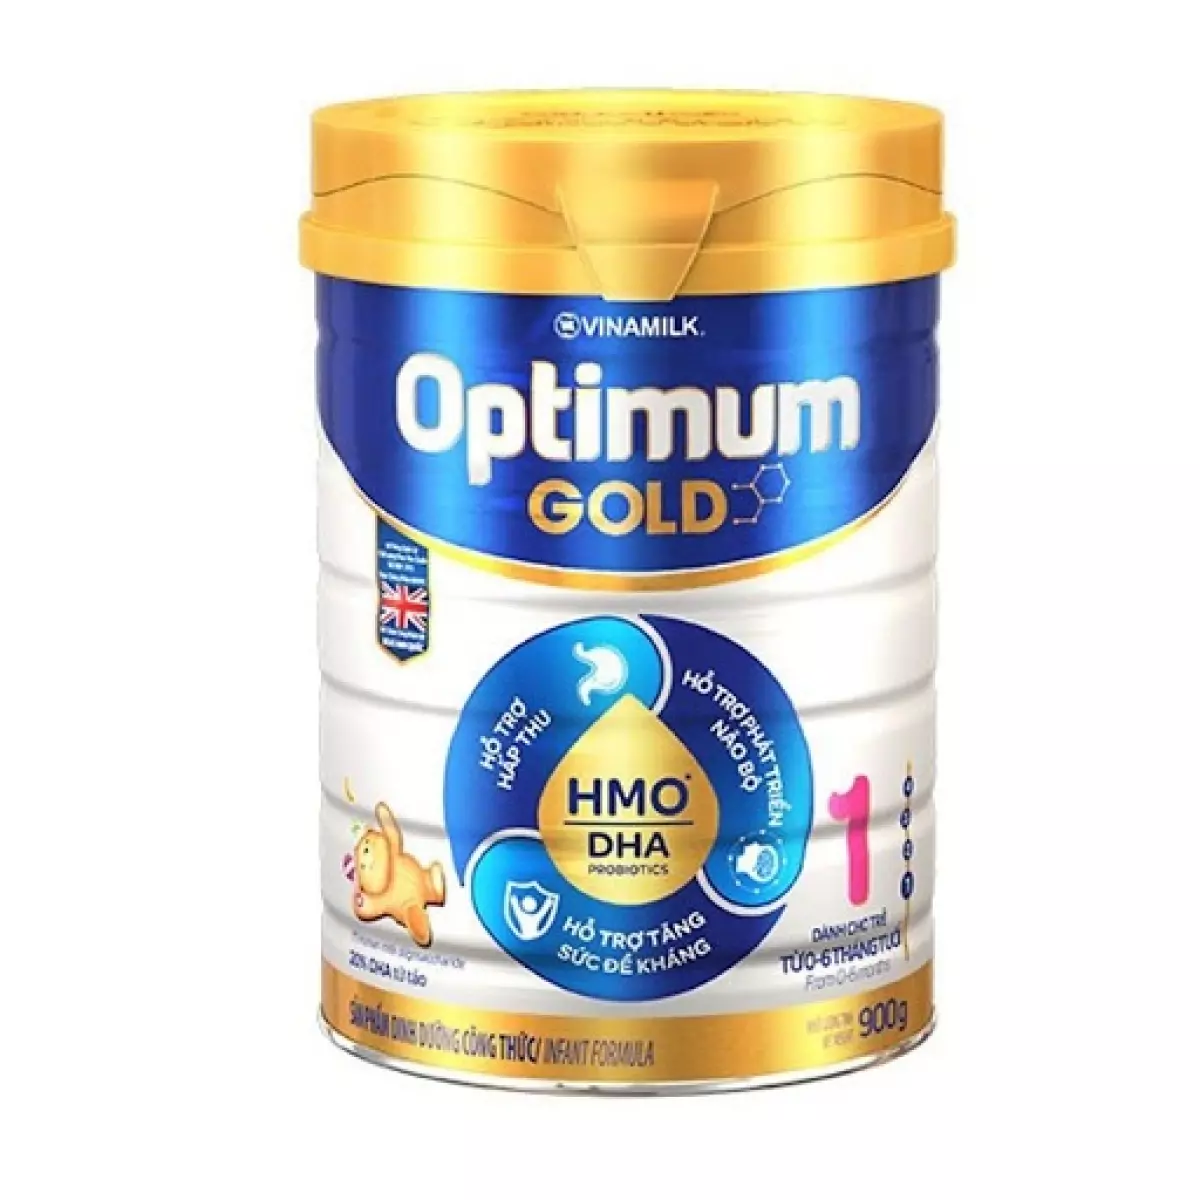 Sữa Vinamilk Optimum Gold 1